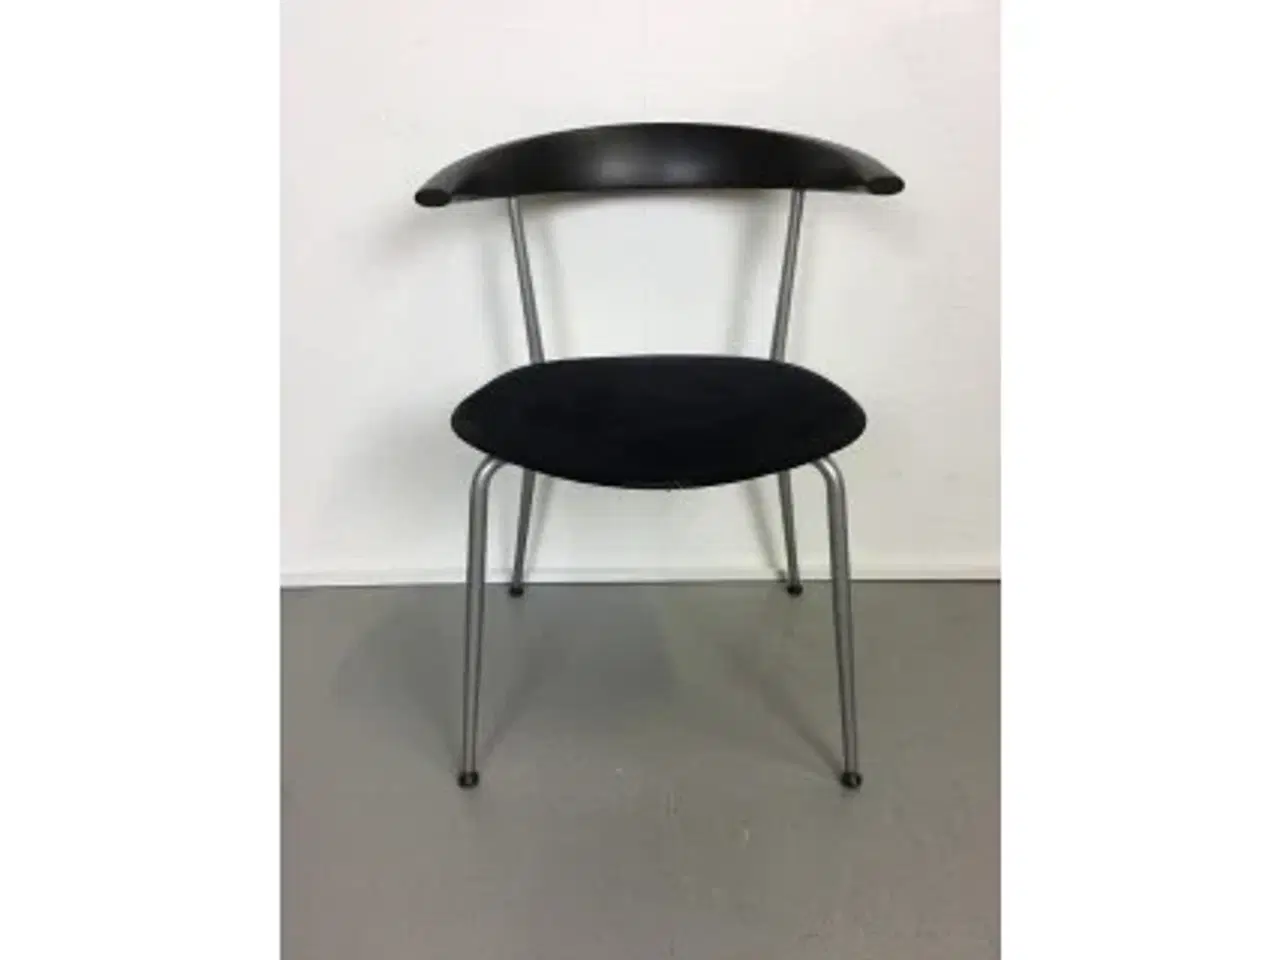 Billede 1 - Efg bondo konferencestol med alcantara polstret sæde, grå stel, nymalet sort ryglæn med lille armlæn